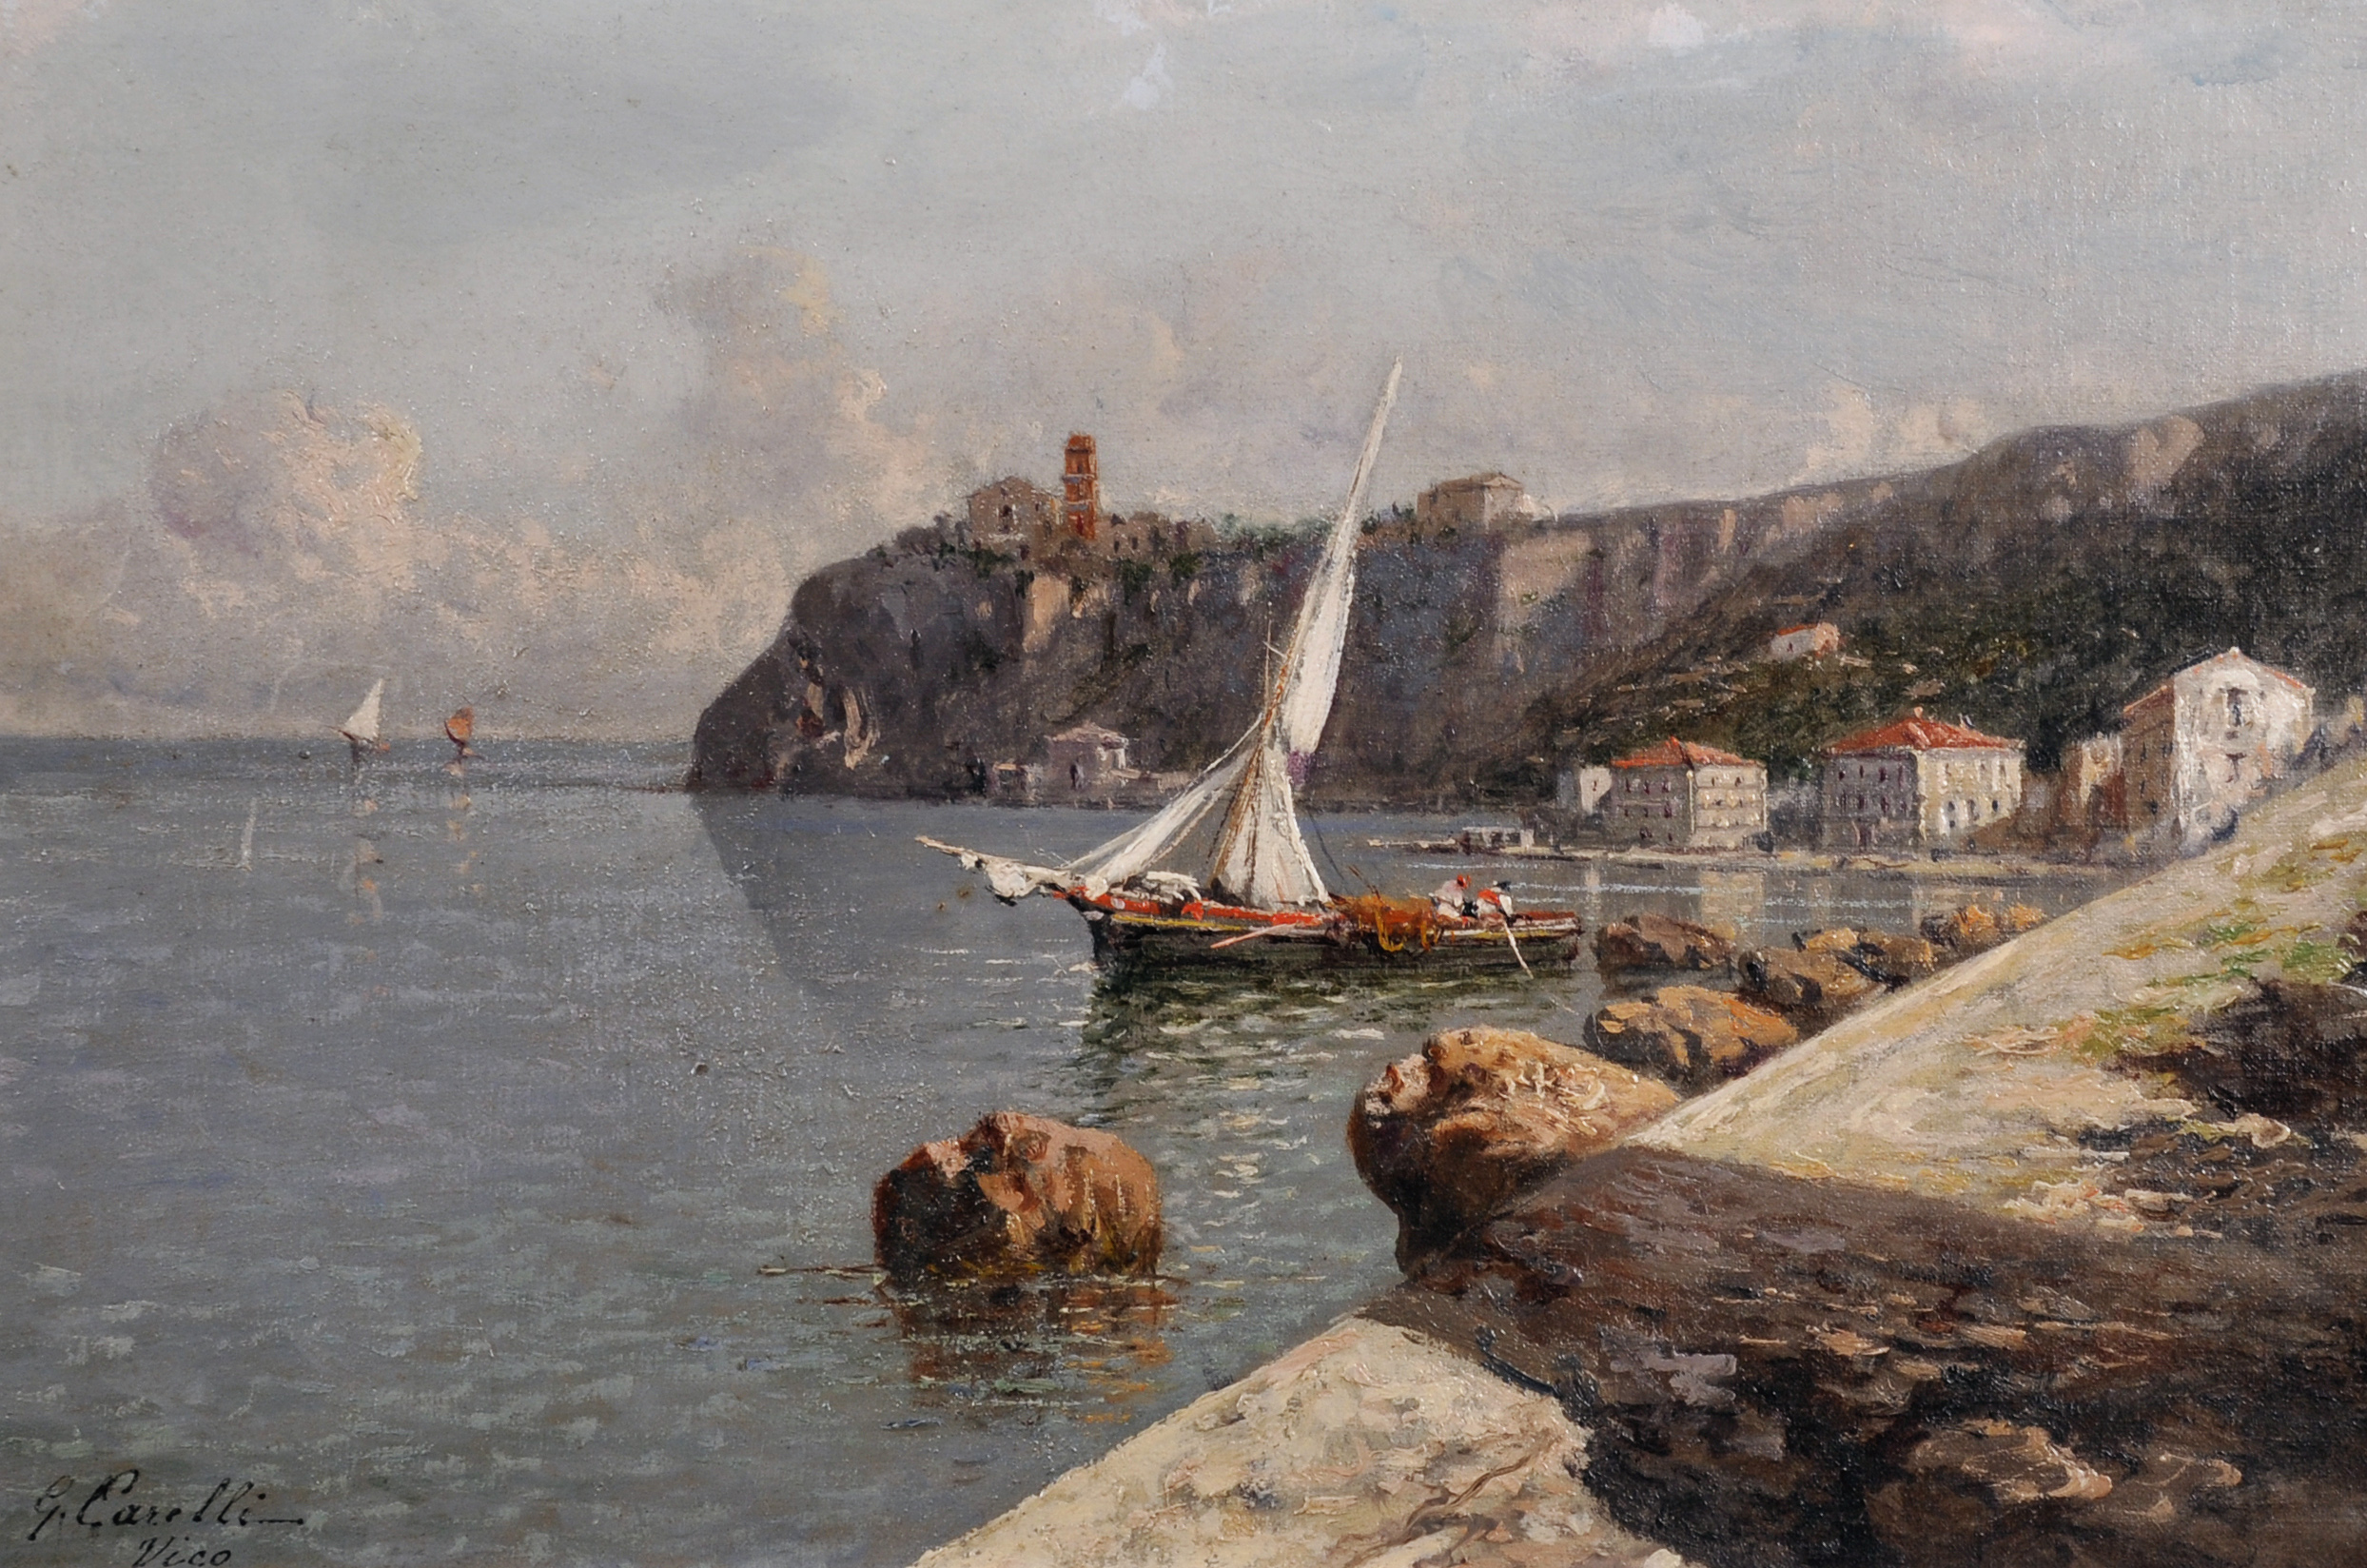 Giuseppe Carelli (1858-1921) Italian. “Vico”, a Coastal Scene, Oil on Canvas laid down, Signed and